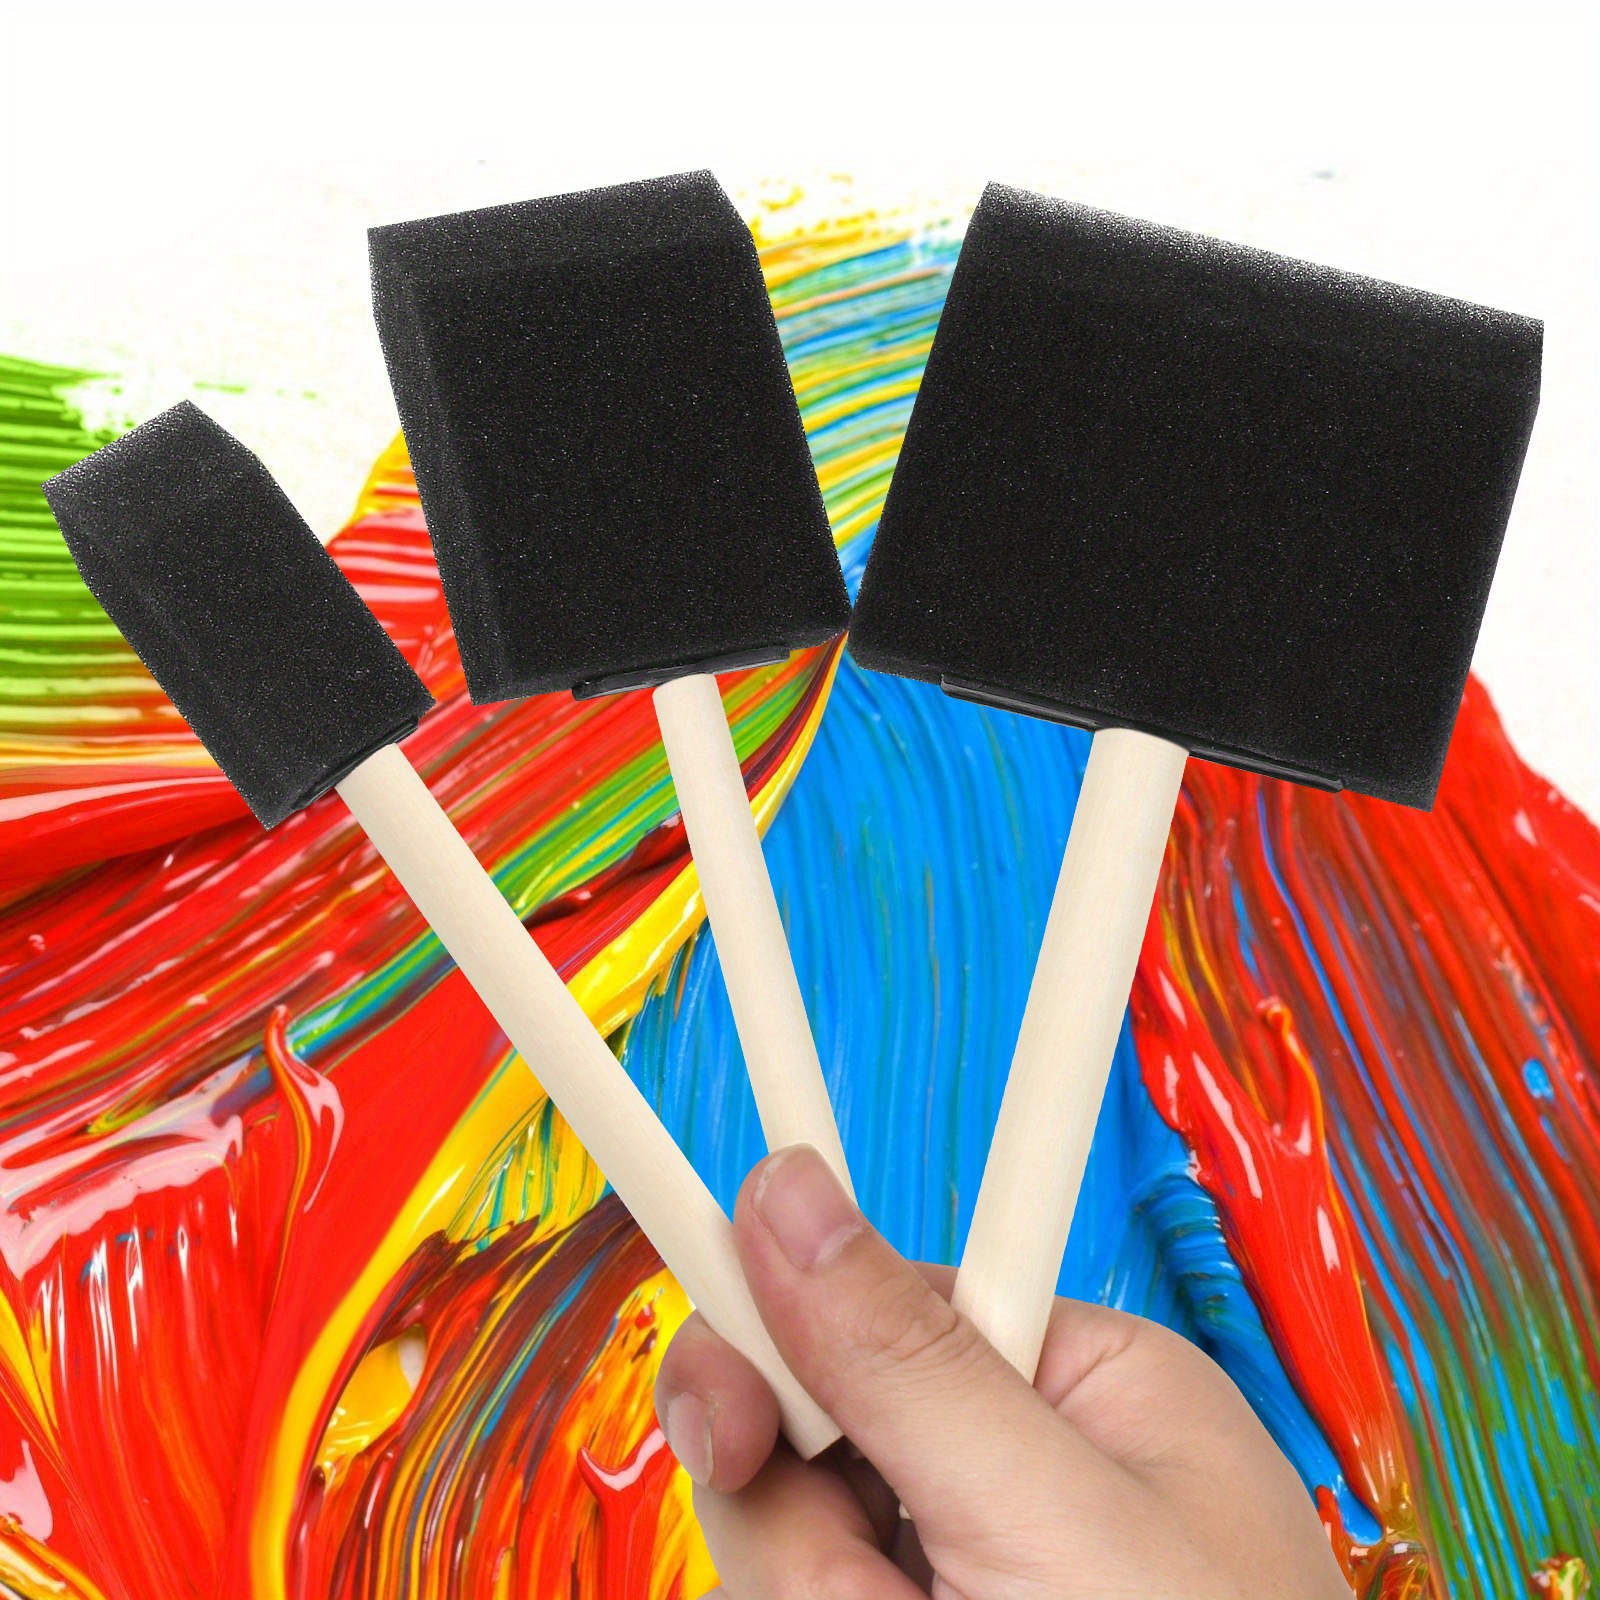 50Pcs Foam Paint Brushes, Sponge Paint Brush Sponge Brush Foam